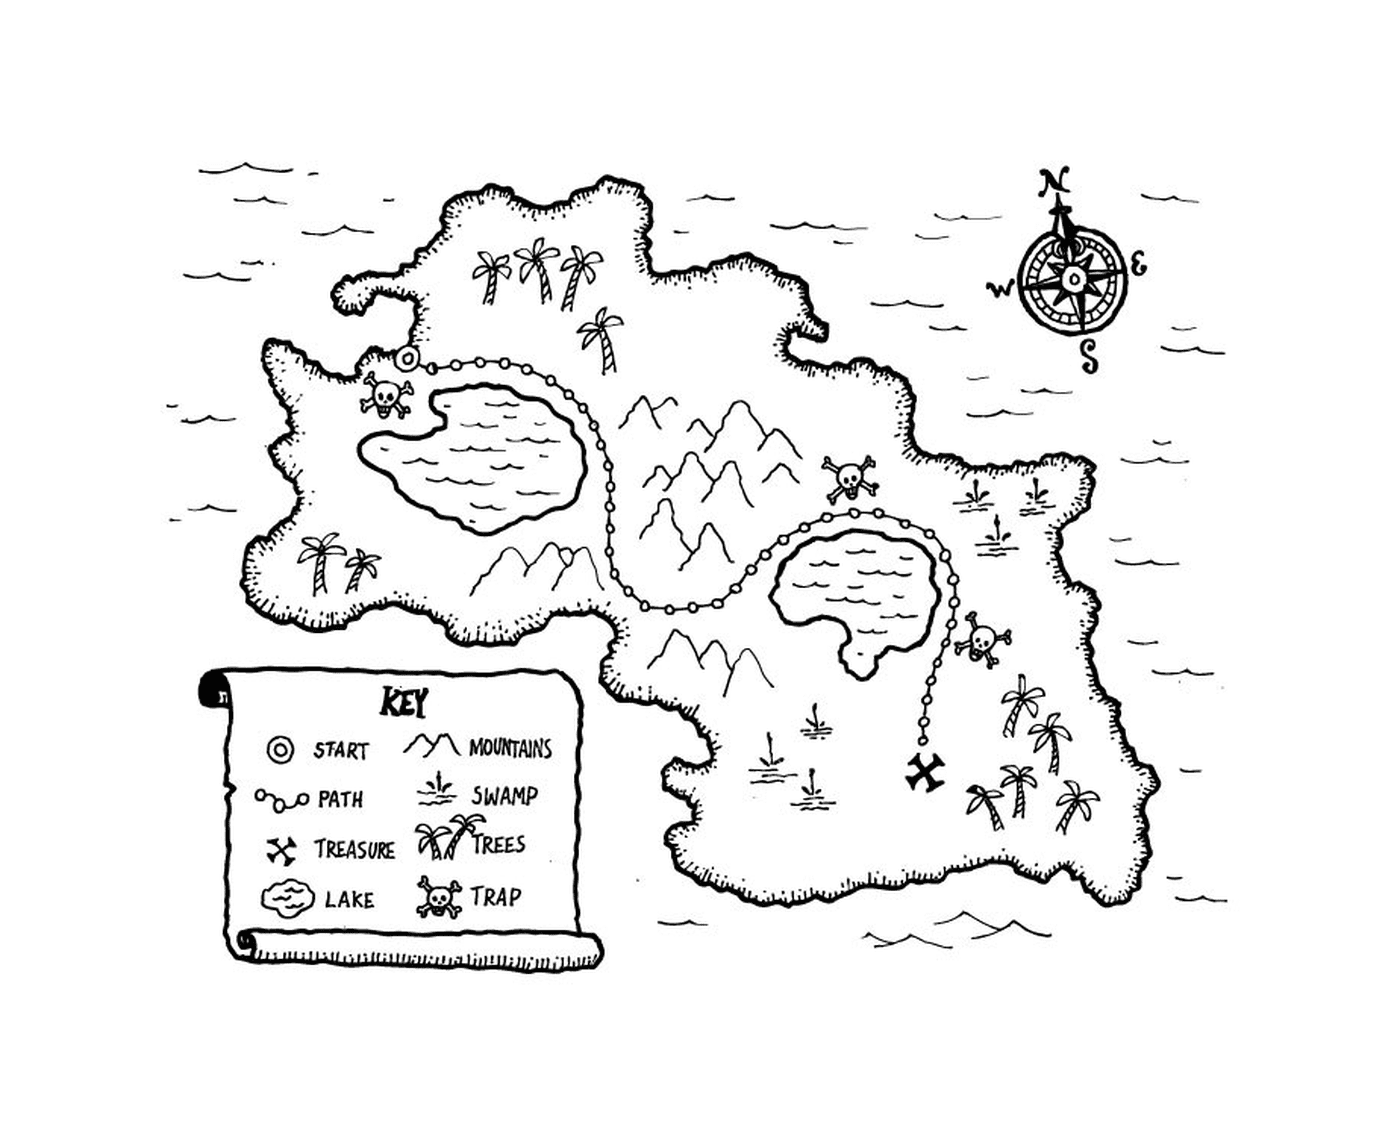  Карта сокровищ пиратов на таинственном острове 